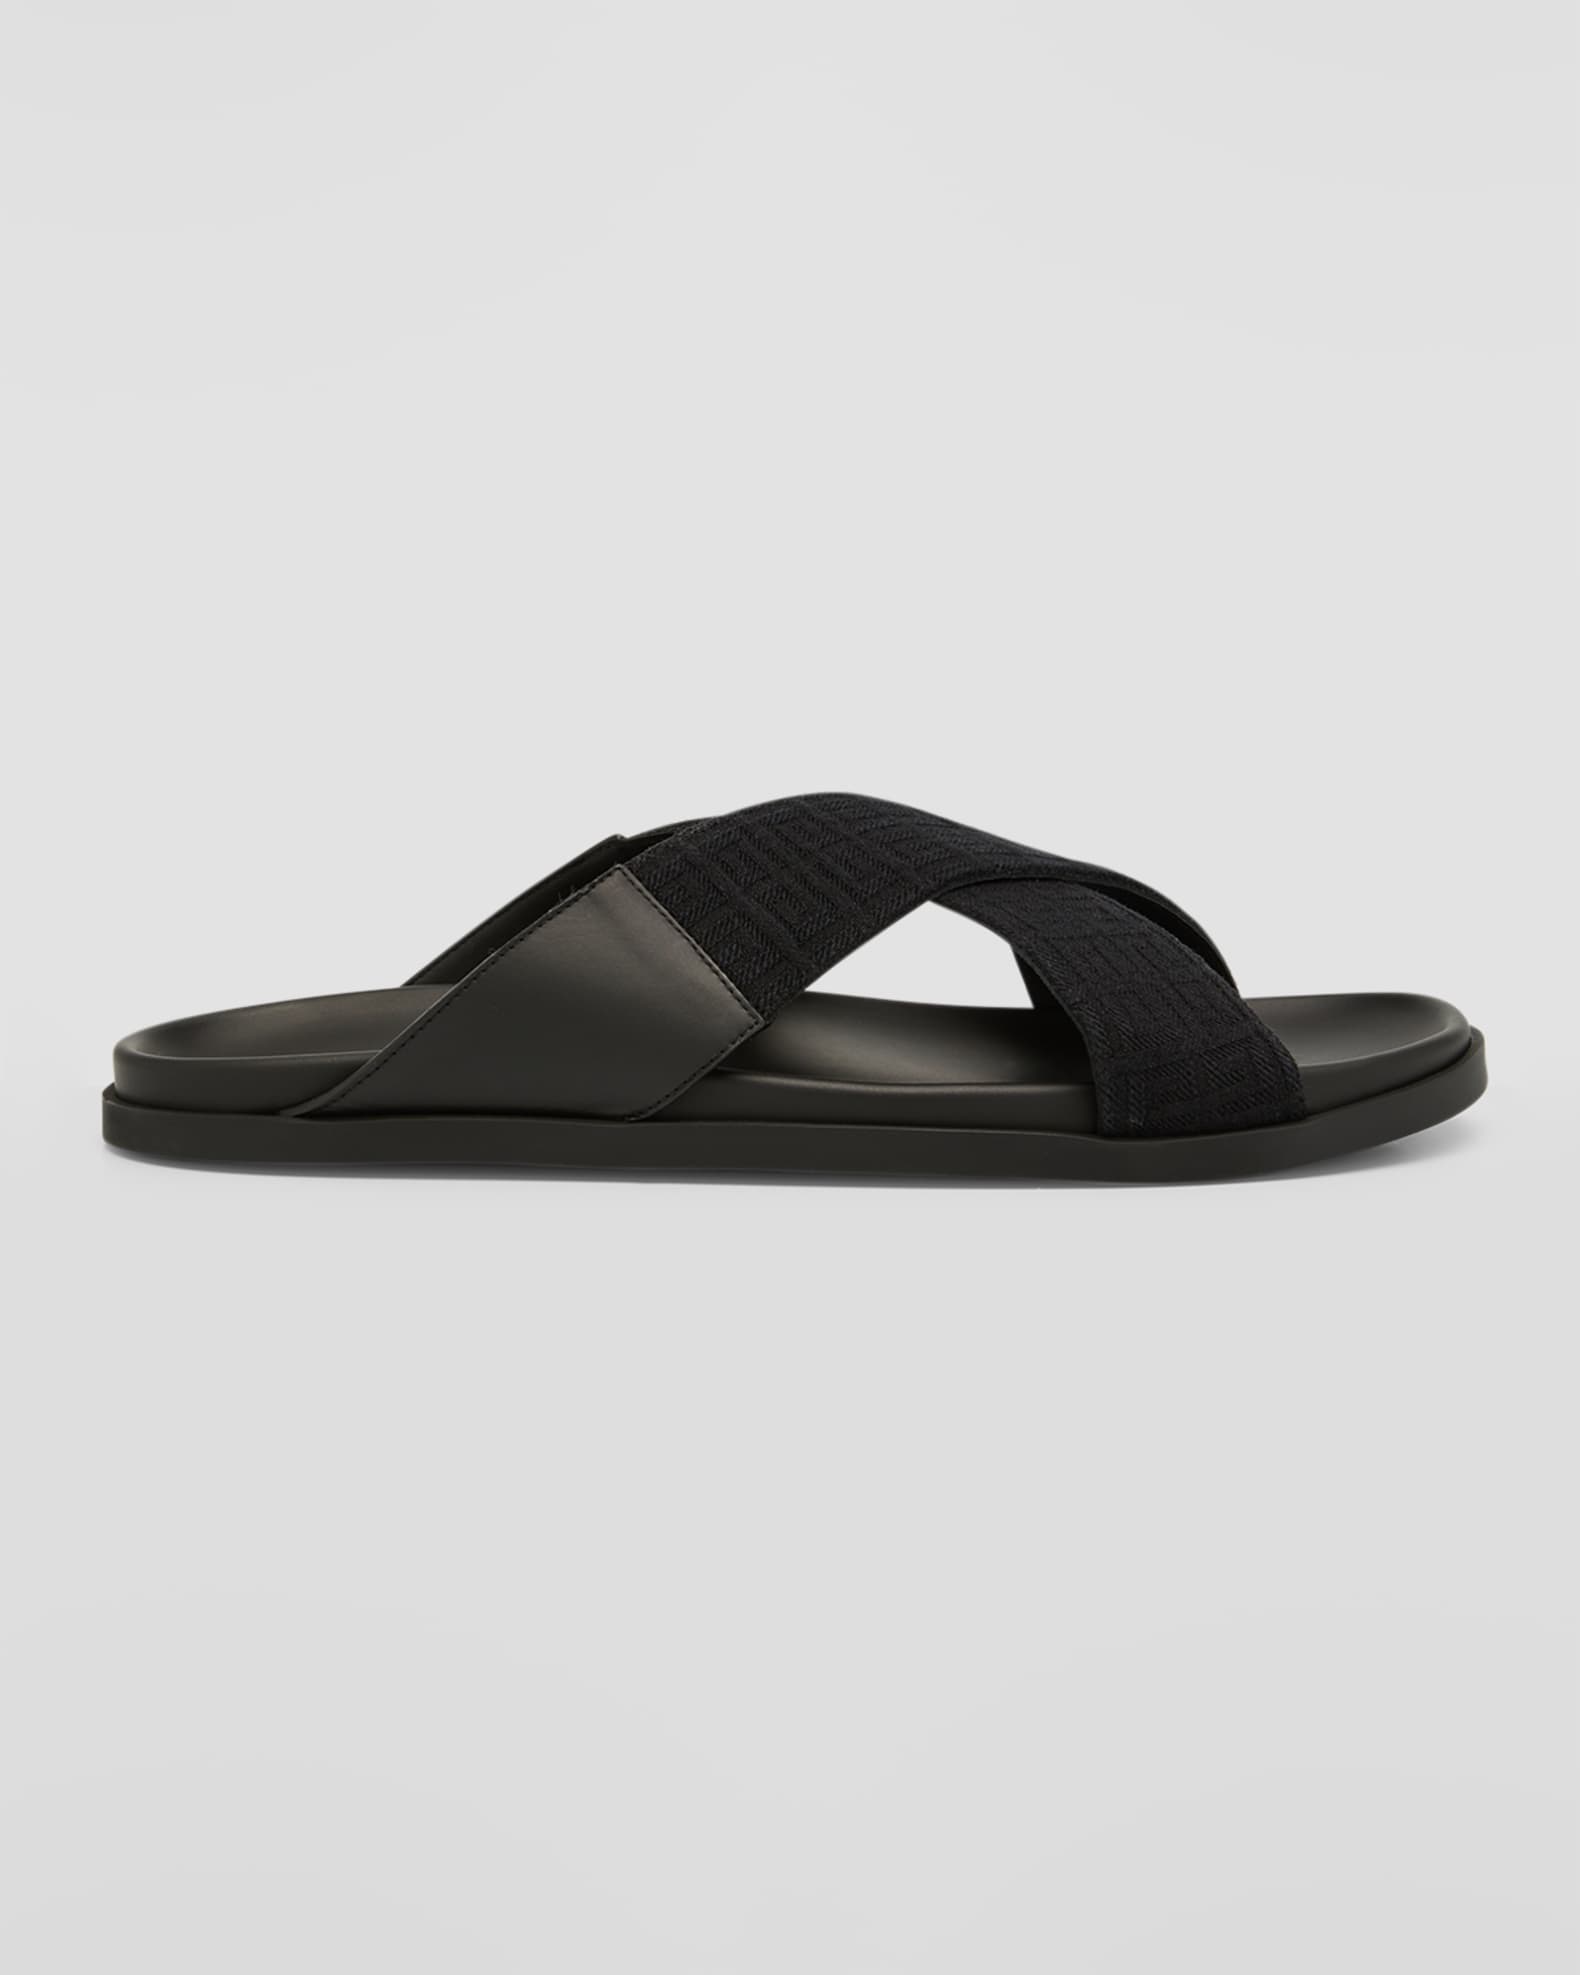 Givenchy Men's G Plage Crisscross Slide Sandals | Neiman Marcus